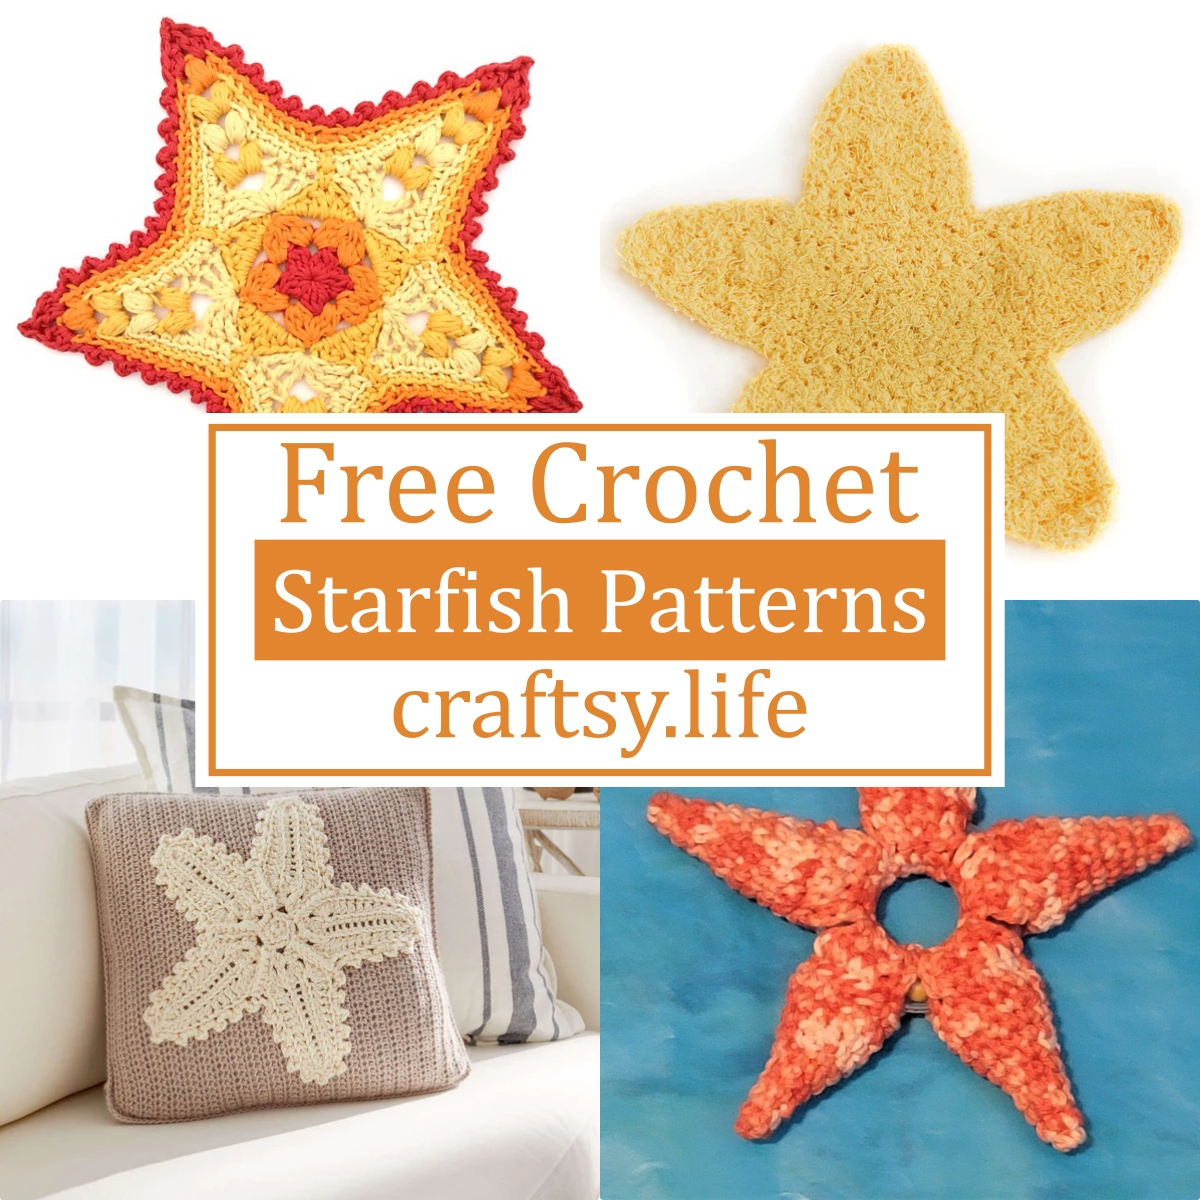 4 Free Crochet Starfish Patterns